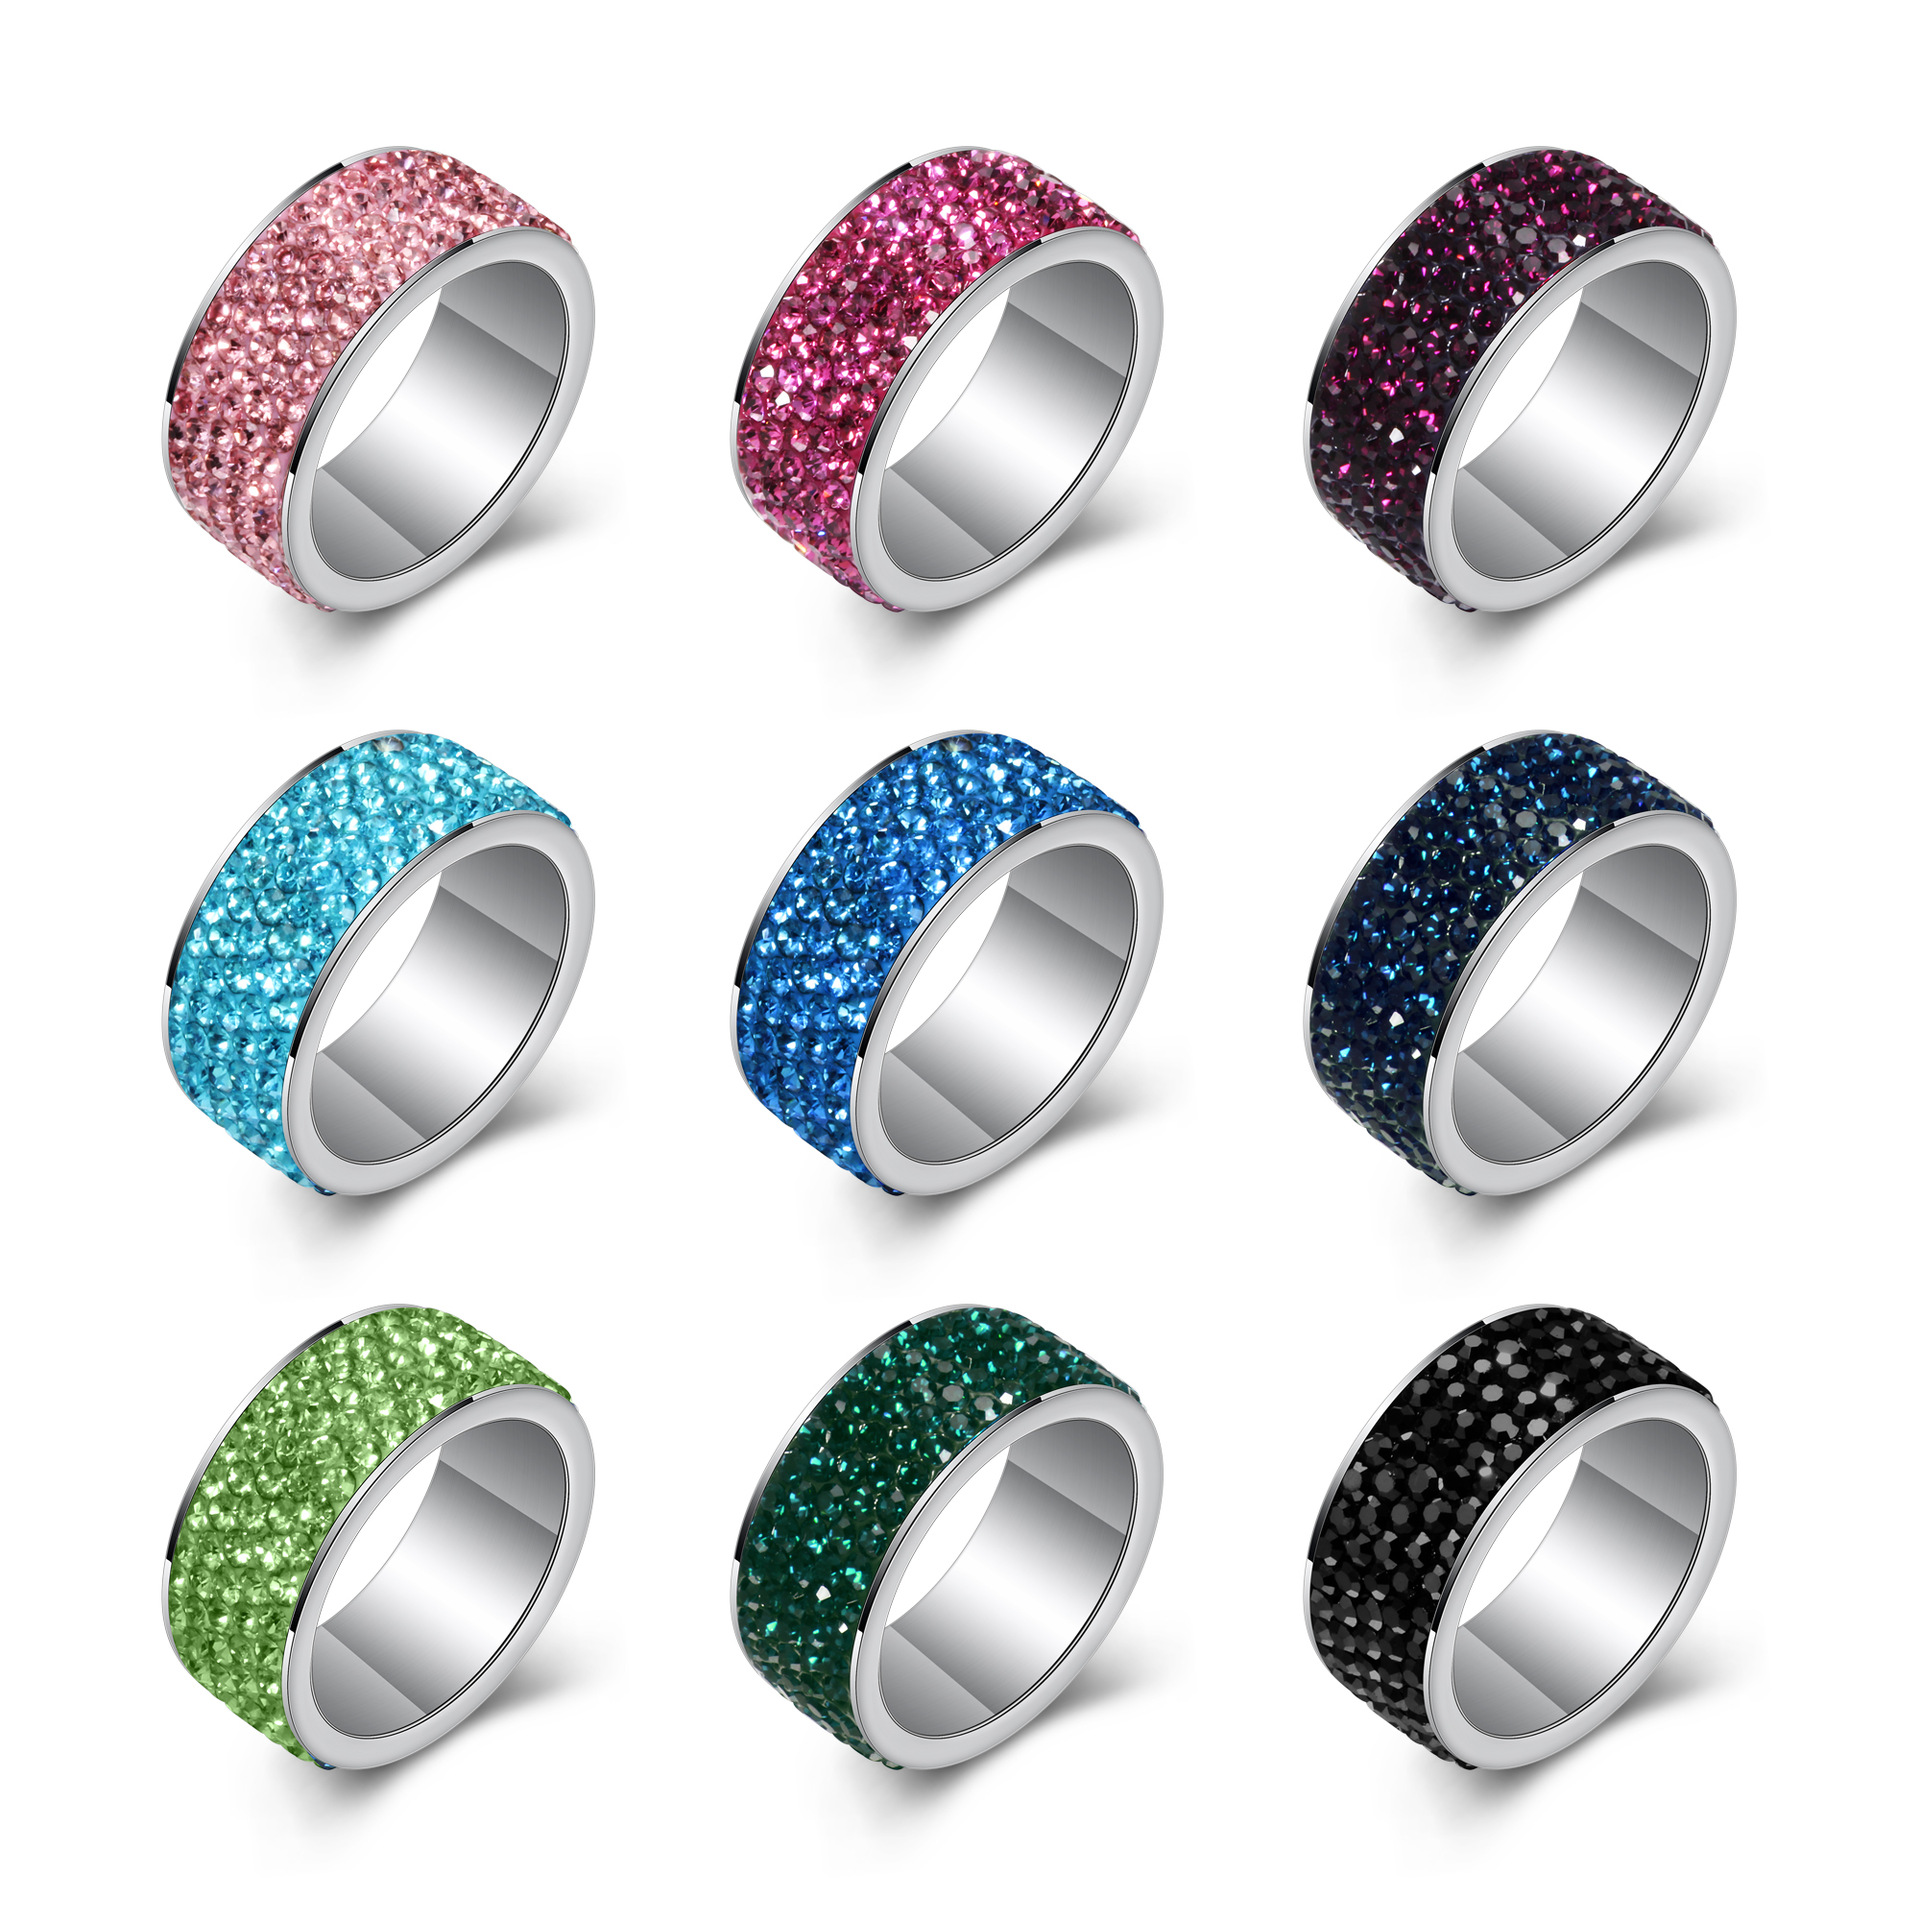 厂家批发 5排钻8MM不锈钢钛钢点钻戒指简约时尚情侣对戒婚戒指环